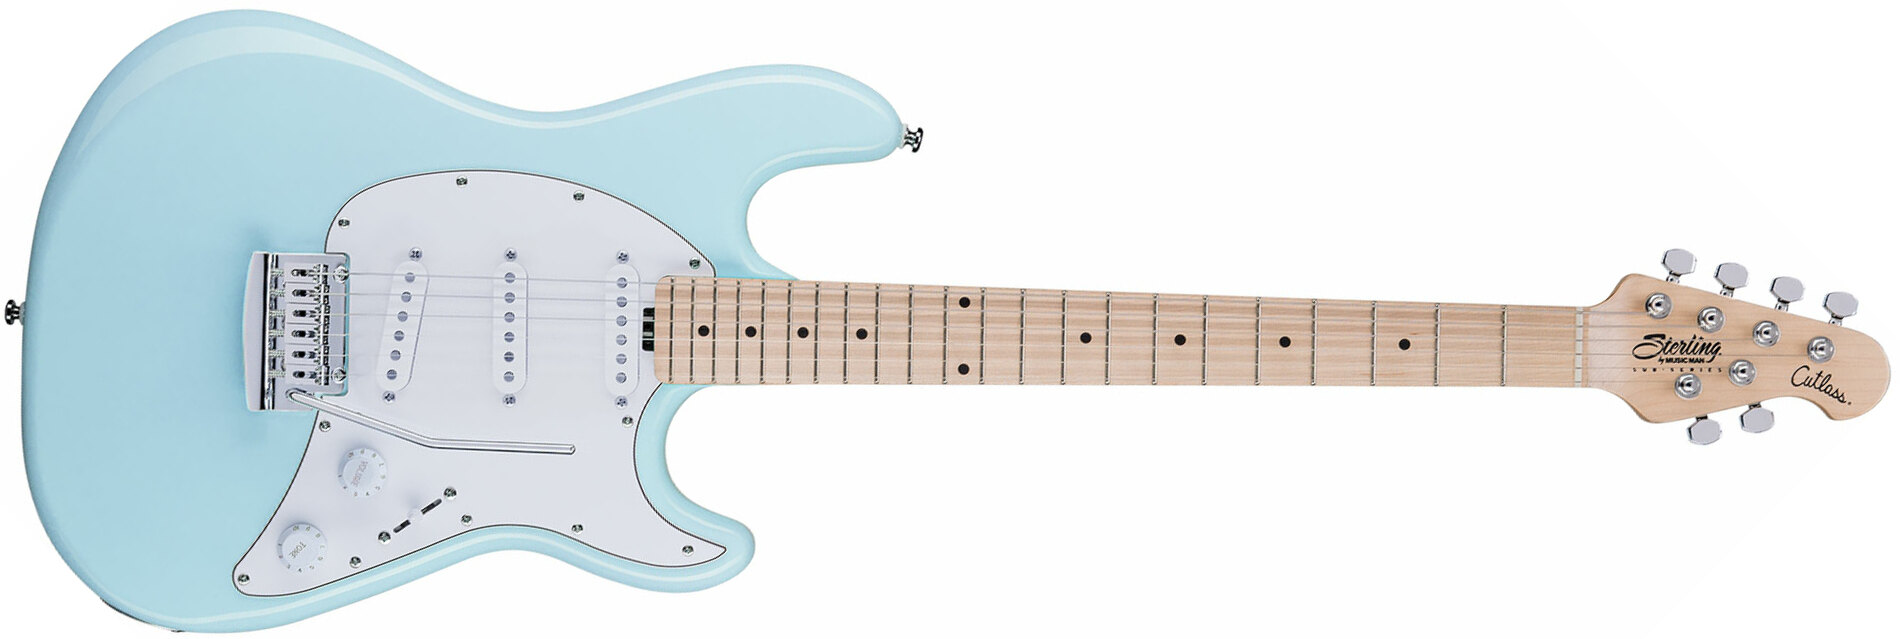 Sterling By Musicman Cutlass Ct30sss 3s Trem Mn - Daphne Blue - Elektrische gitaar in Str-vorm - Main picture